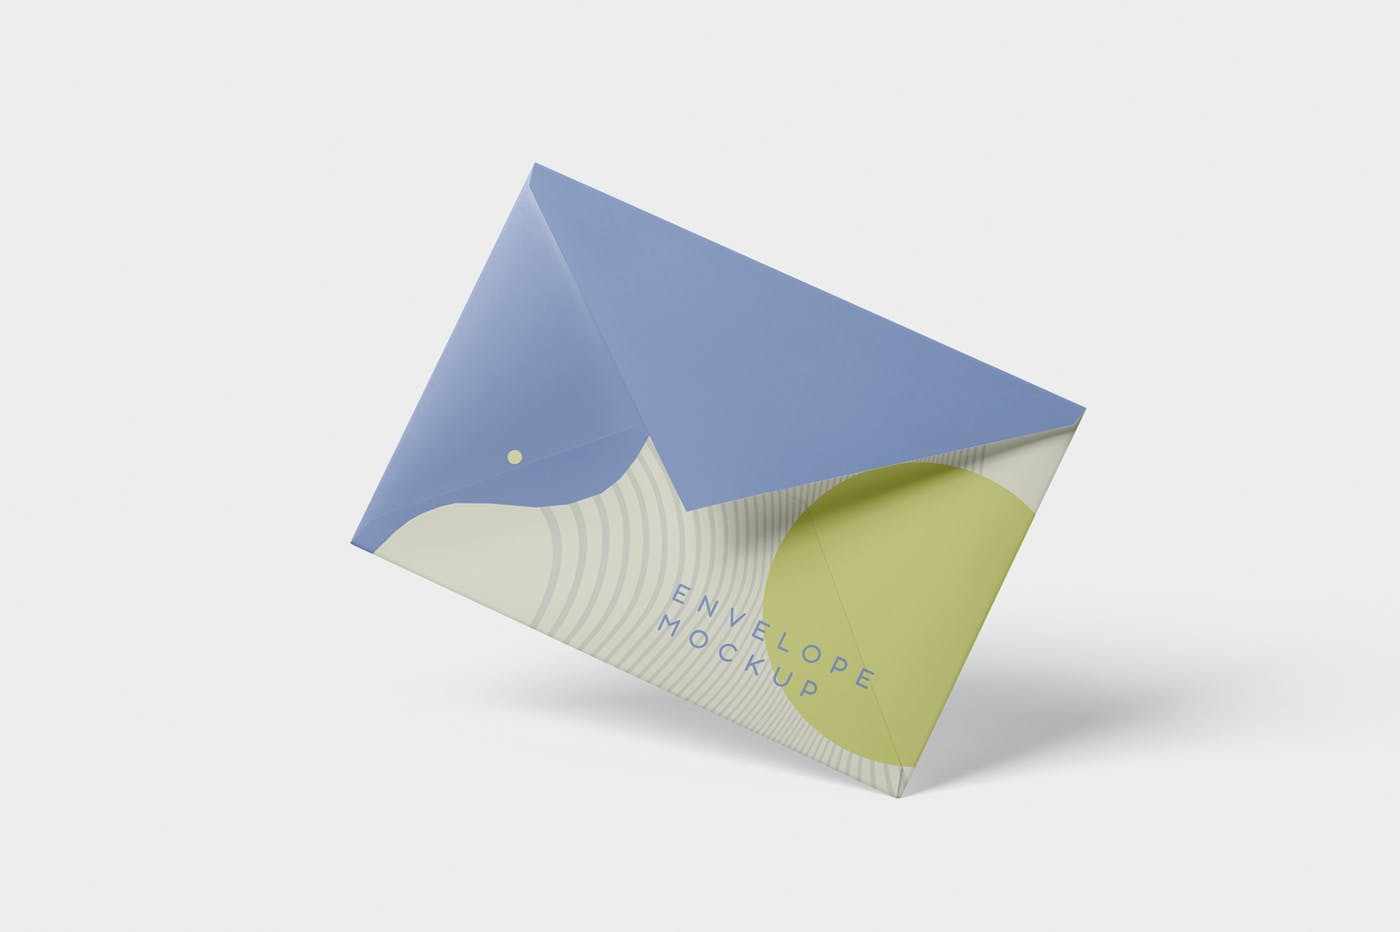 高端企业信封外观设计图第一素材精选模板 Envelope C5 – C6 Mock-Up Set插图(2)